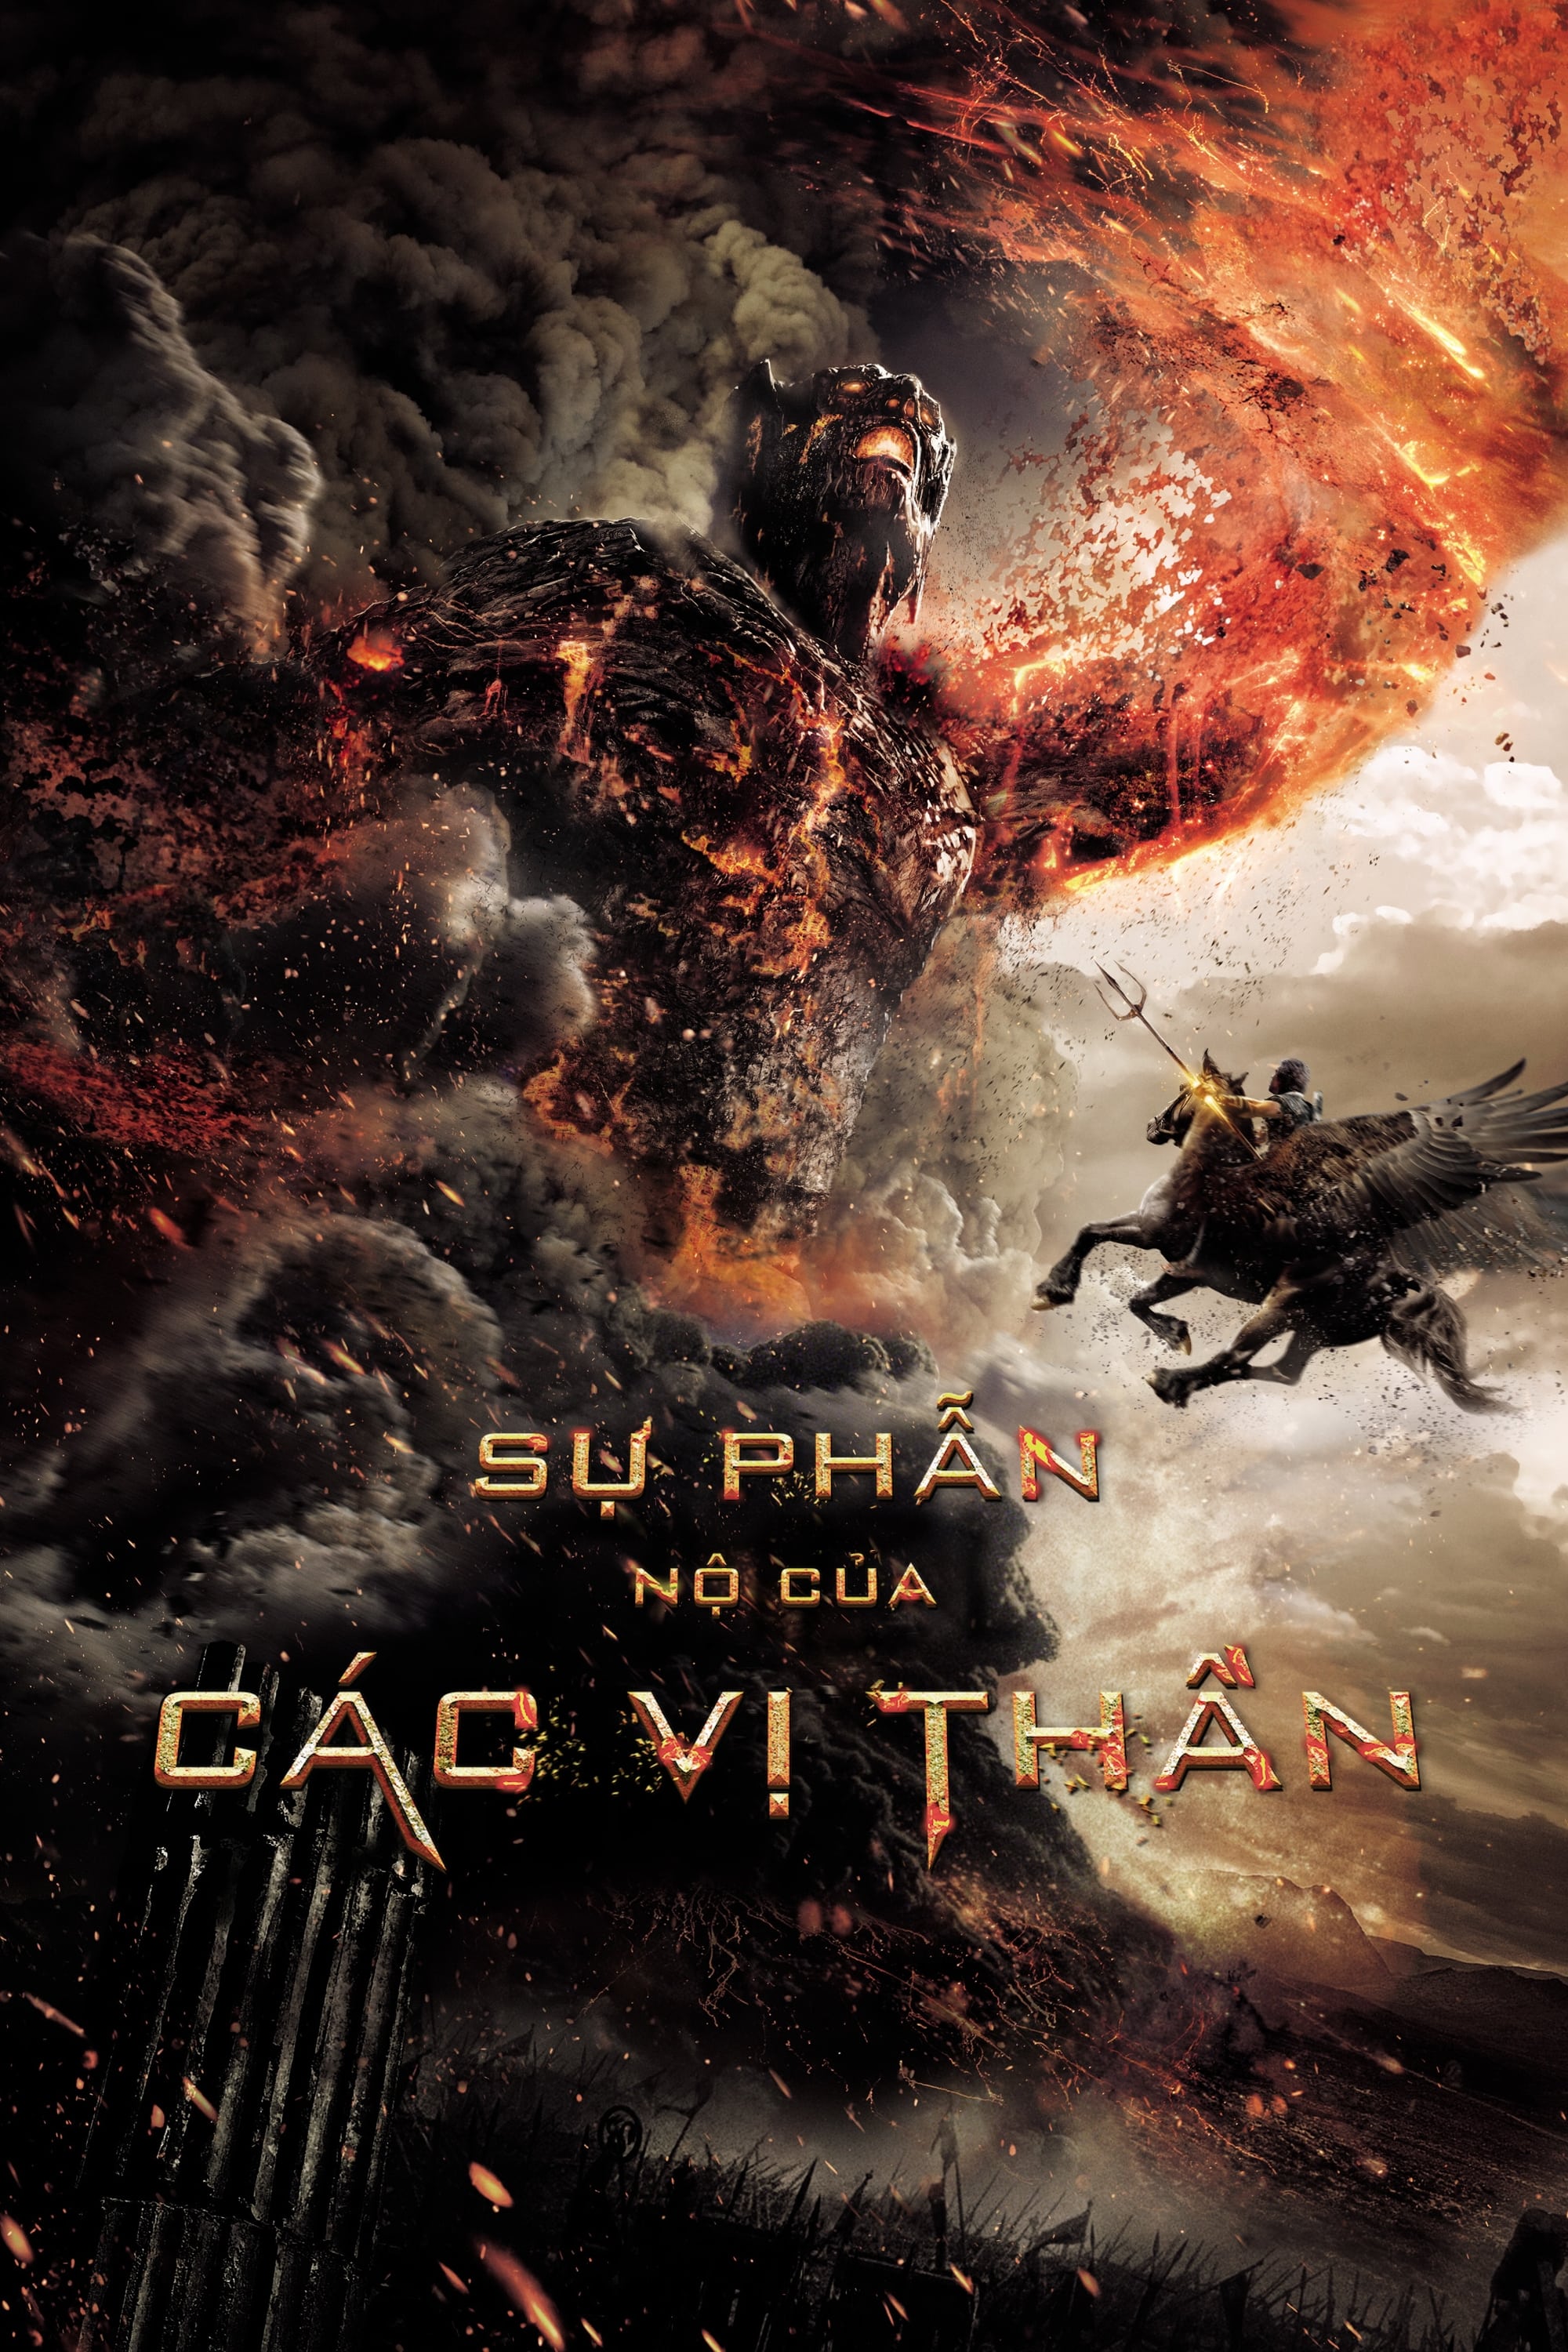 Sự Phẫn Nộ Của Các Vị Thần - Wrath of the Titans (2012)